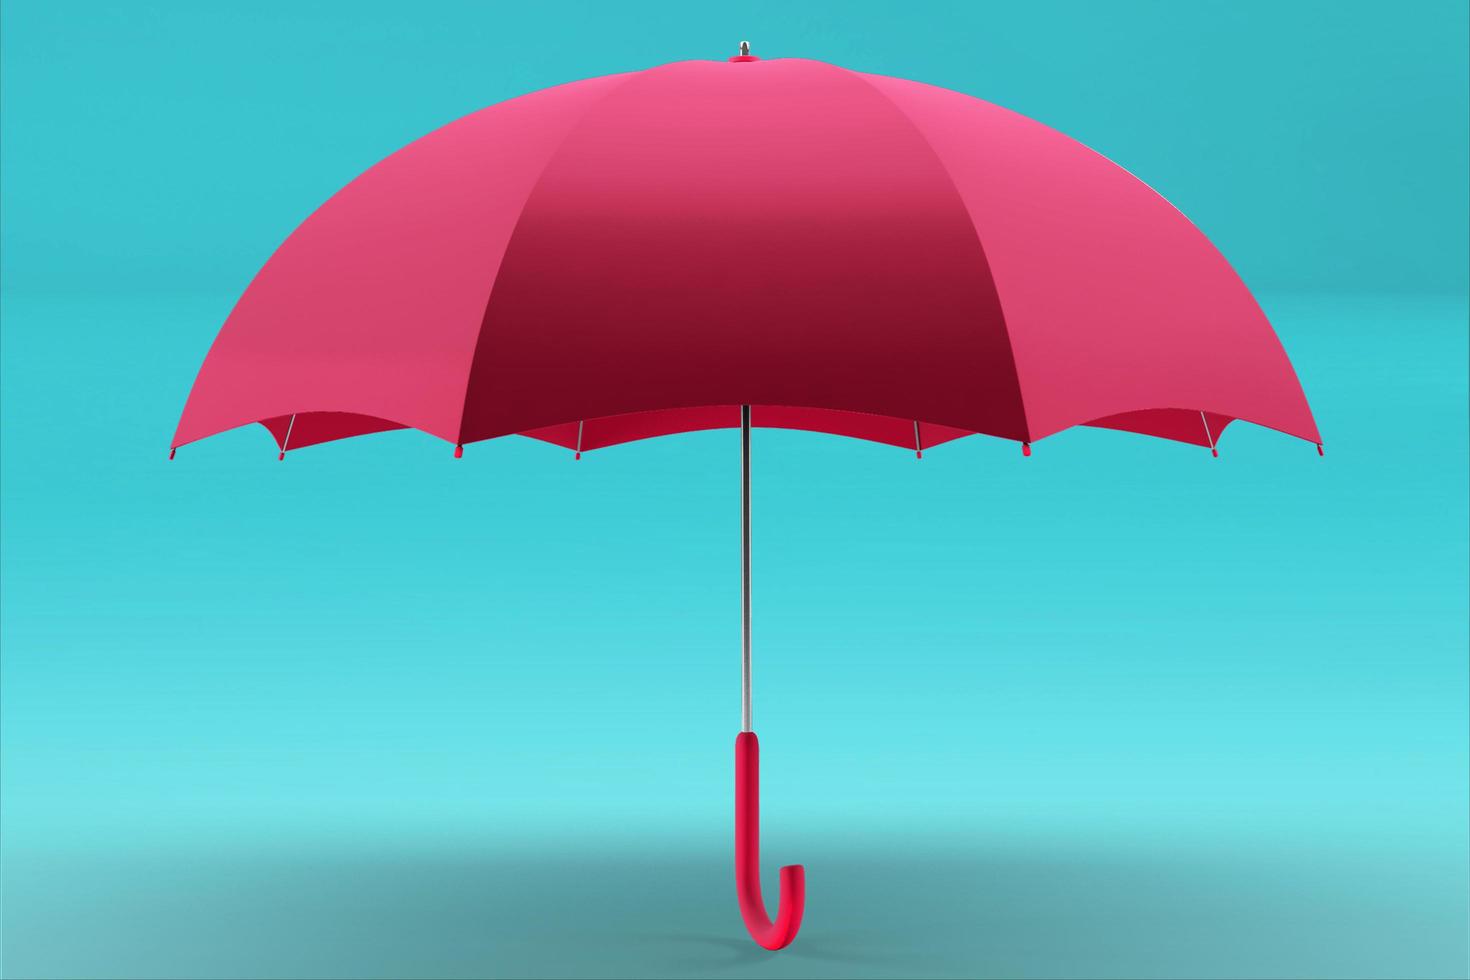 3D-rendering paraply framifrån och ovanifrån. realistisk mockup av tomt parasoll med trähandtag, klassiskt tillbehör för regnskydd under våren, hösten eller monsunsäsongen foto